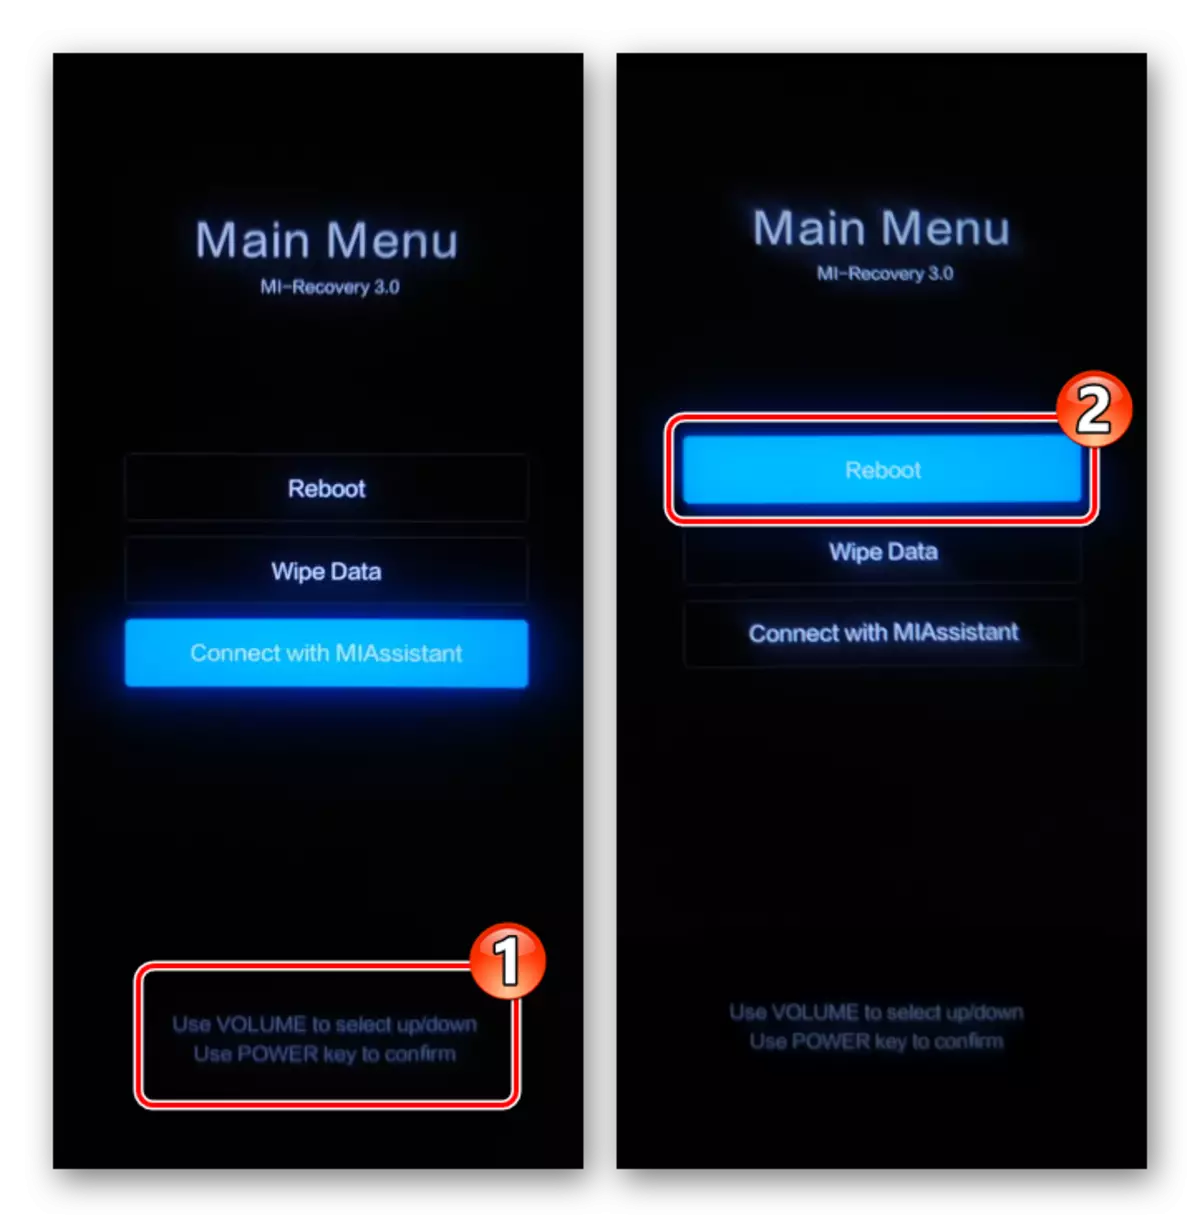 Xiaomi Miui menu utama (pemulihan kilang) - Kawalan menggunakan butang perkakasan - pilih fungsi reboot